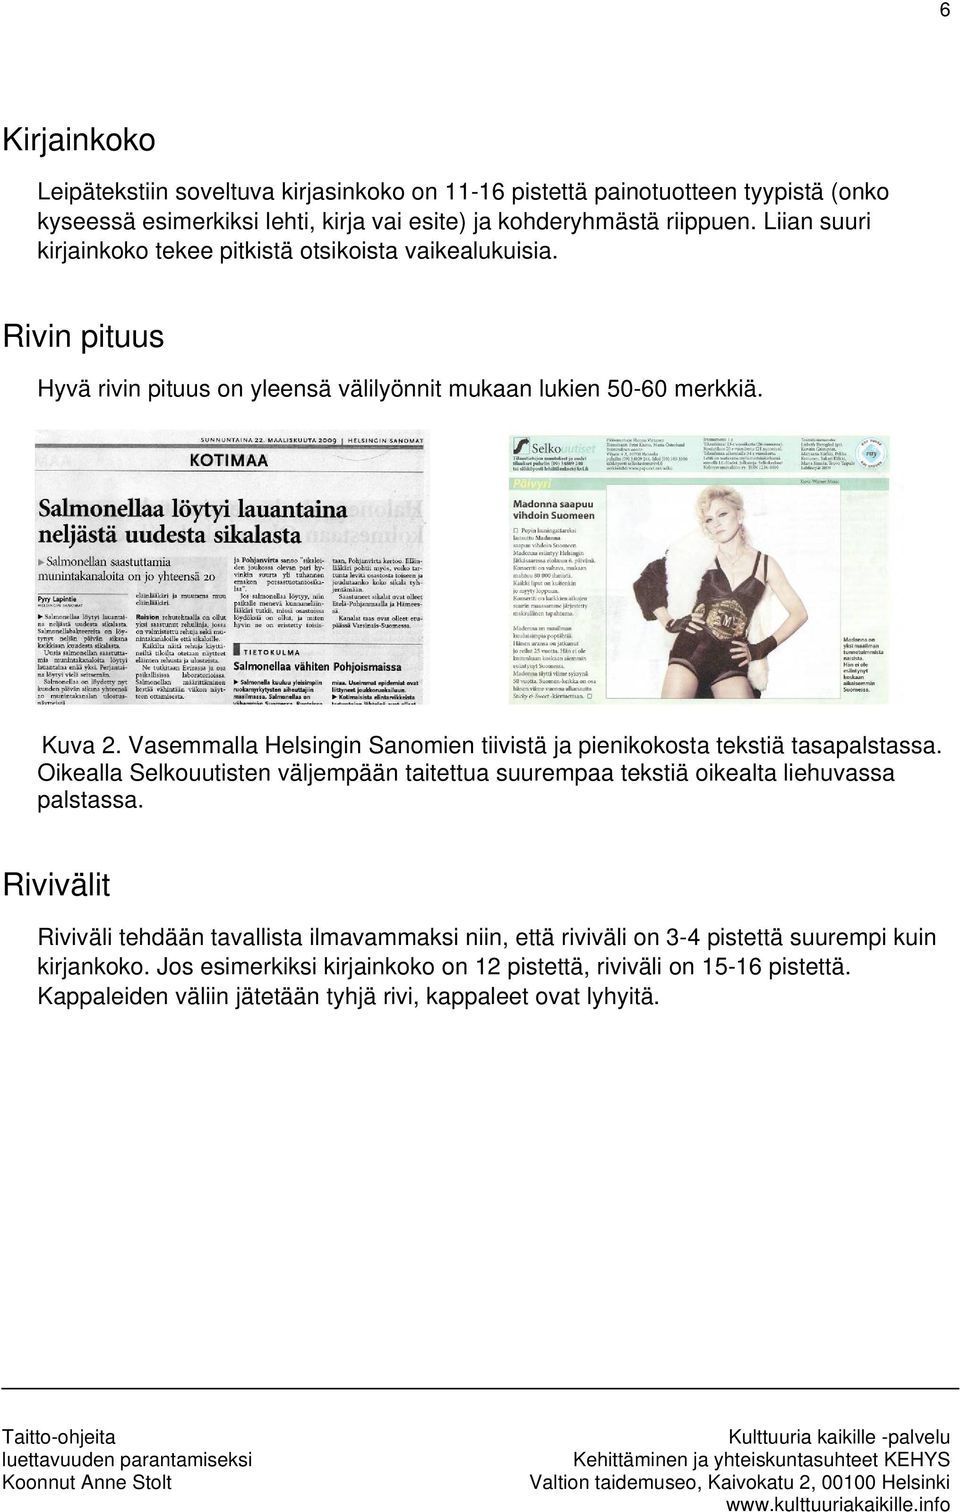 Vasemmalla Helsingin Sanomien tiivistä ja pienikokosta tekstiä tasapalstassa. Oikealla Selkouutisten väljempään taitettua suurempaa tekstiä oikealta liehuvassa palstassa.